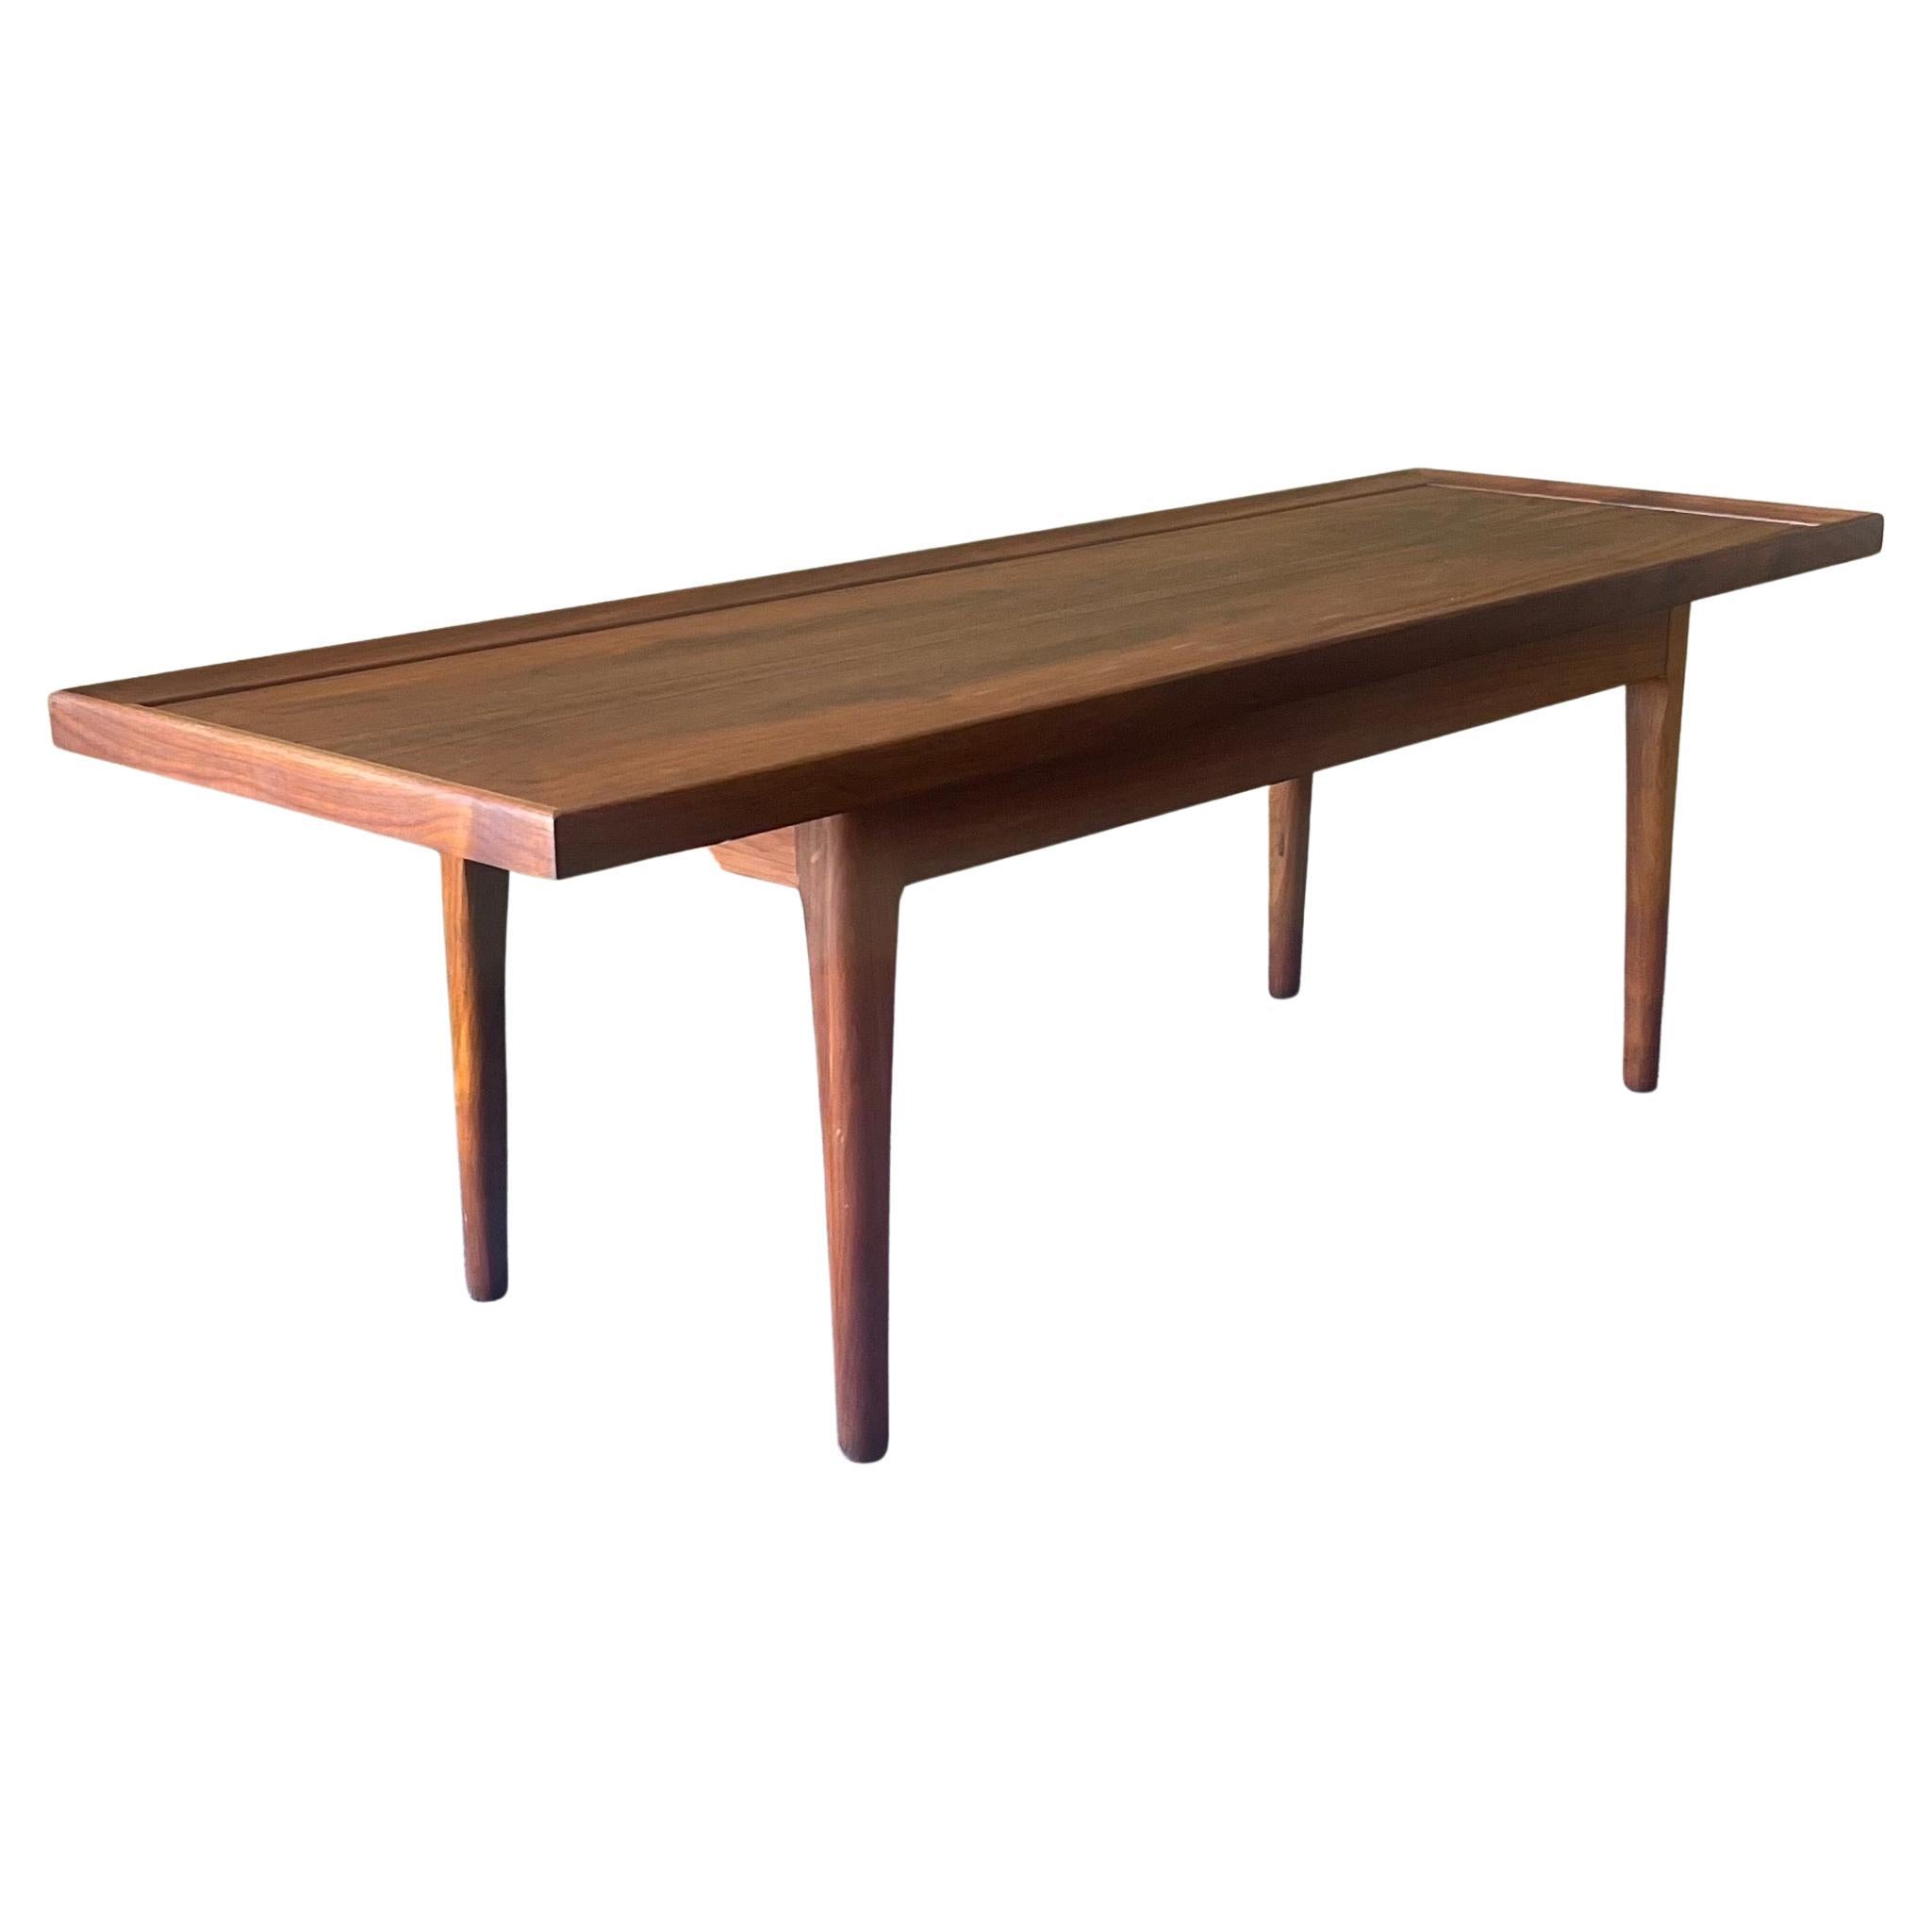 Ein außergewöhnlicher minimalistischer Couchtisch aus Nussbaumholz von Kipp Stewart für Drexel - Declaration line, ca. 1960er Jahre.  Der Tisch hat einen wunderschönen Farbton und eine schöne Maserung, die durch eine Ebenholzeinlage kontrastiert